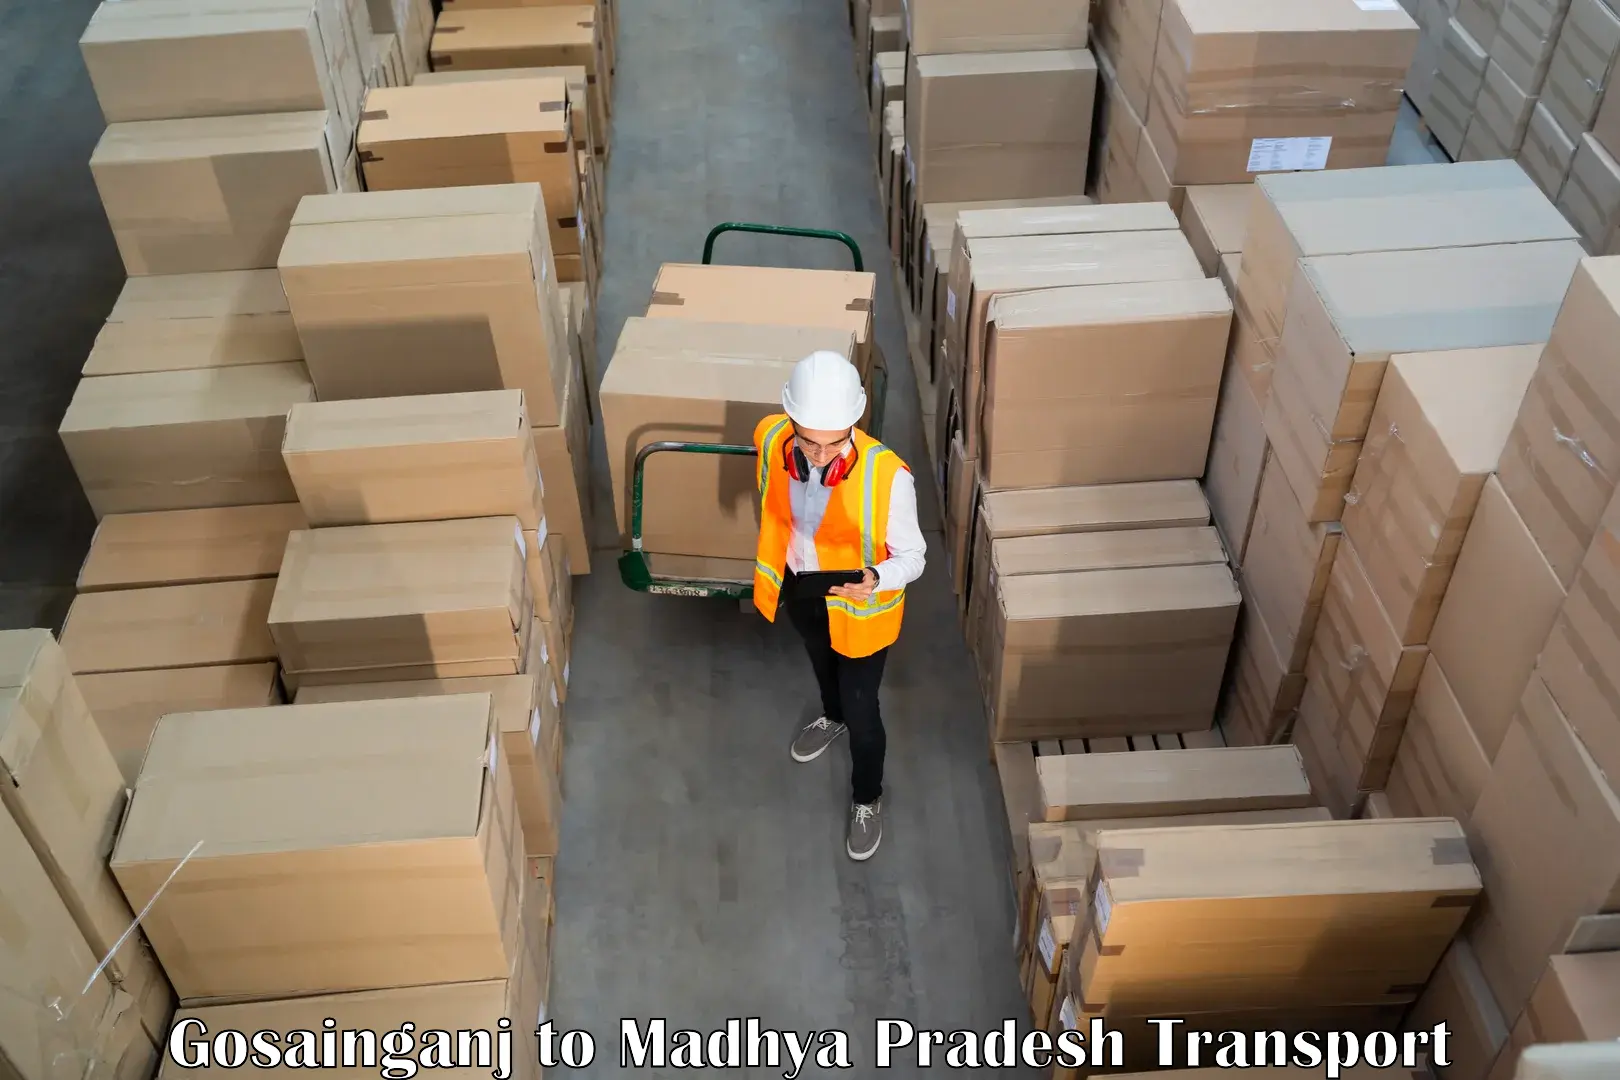 Luggage transport services Gosainganj to Khandwa